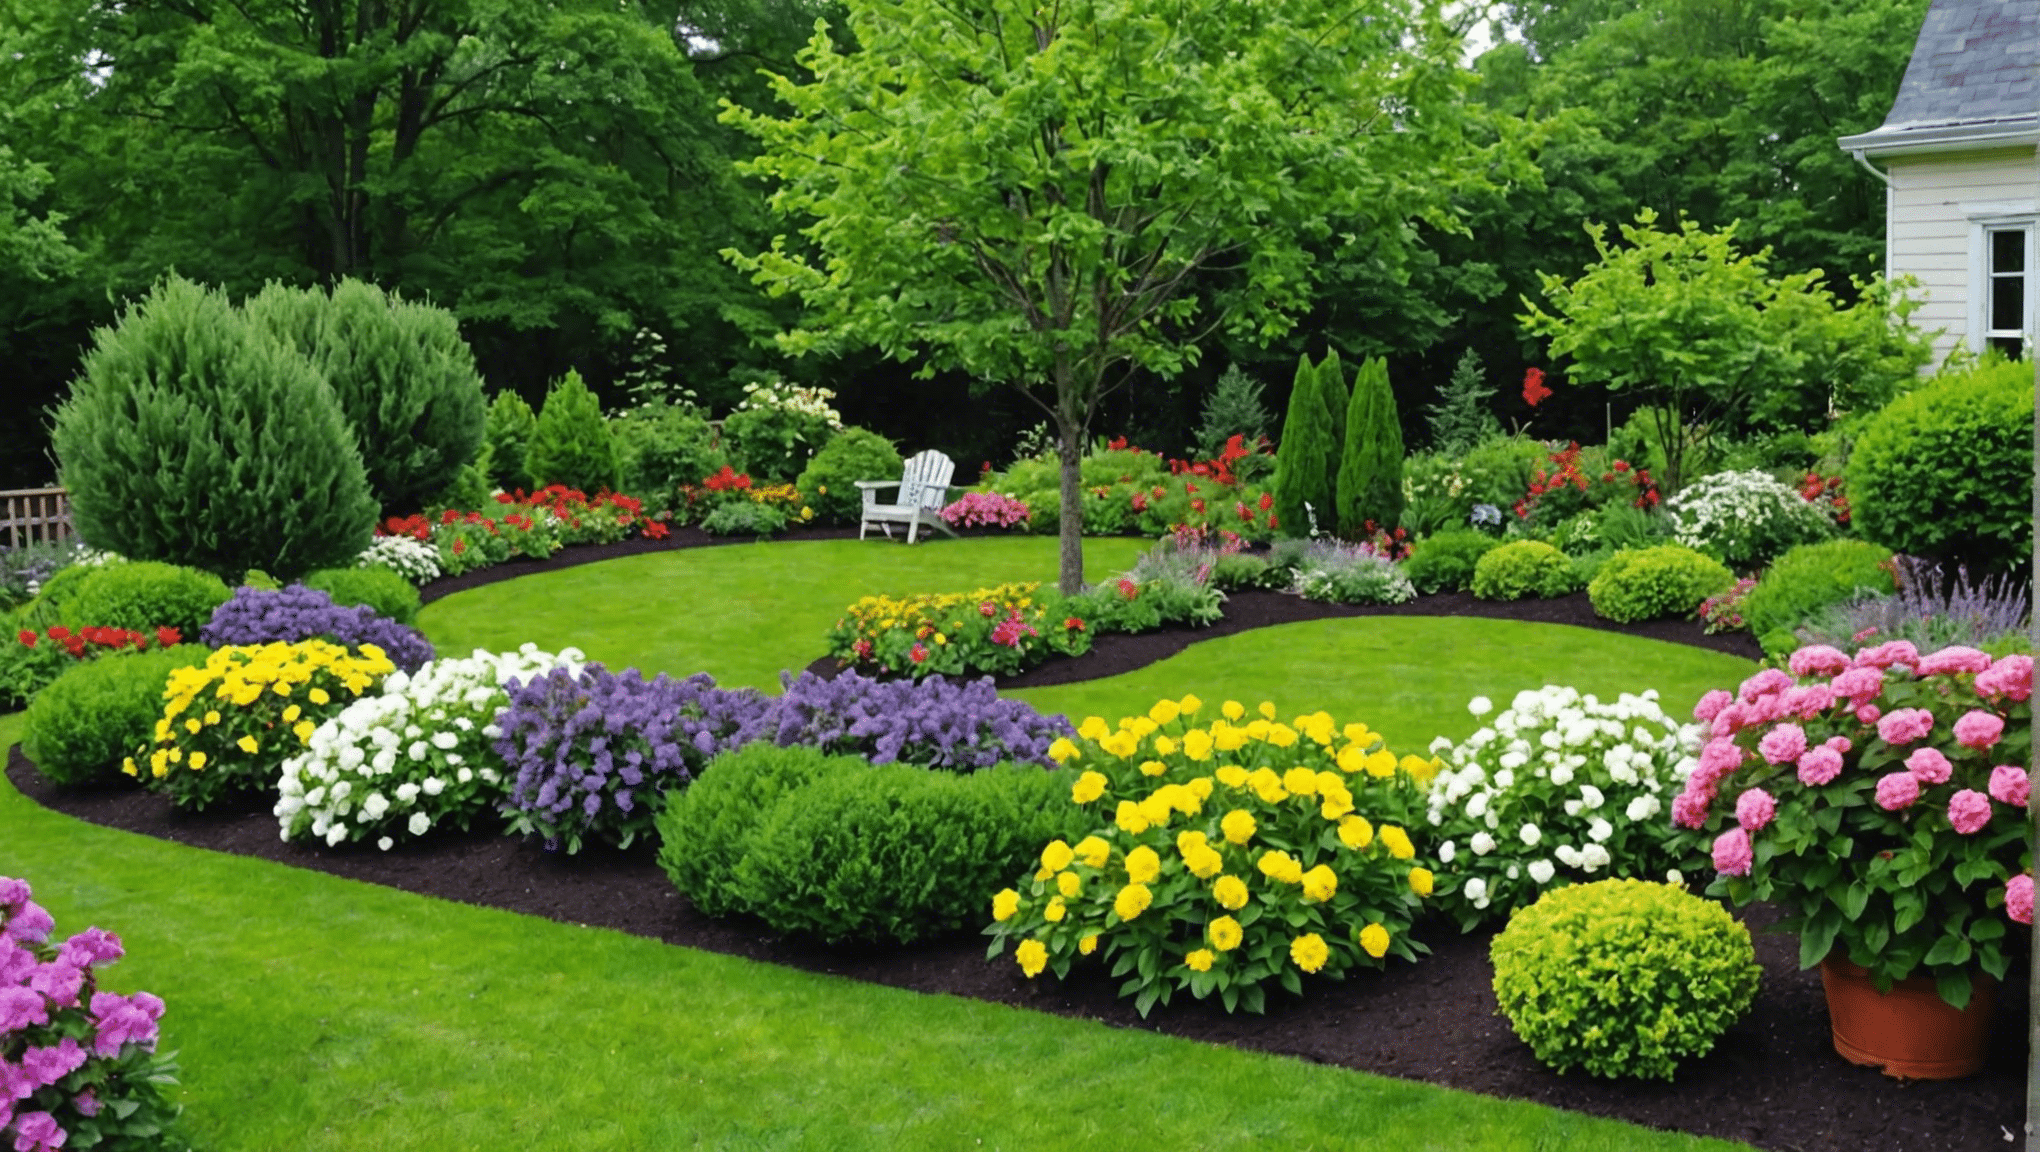 objavte úžasné záhradnícke triky a nápady, ako pozdvihnúť vašu záhradkársku hru. pripravte sa na premenu vášho zeleného priestoru pomocou týchto najlepších tipov a trikov.